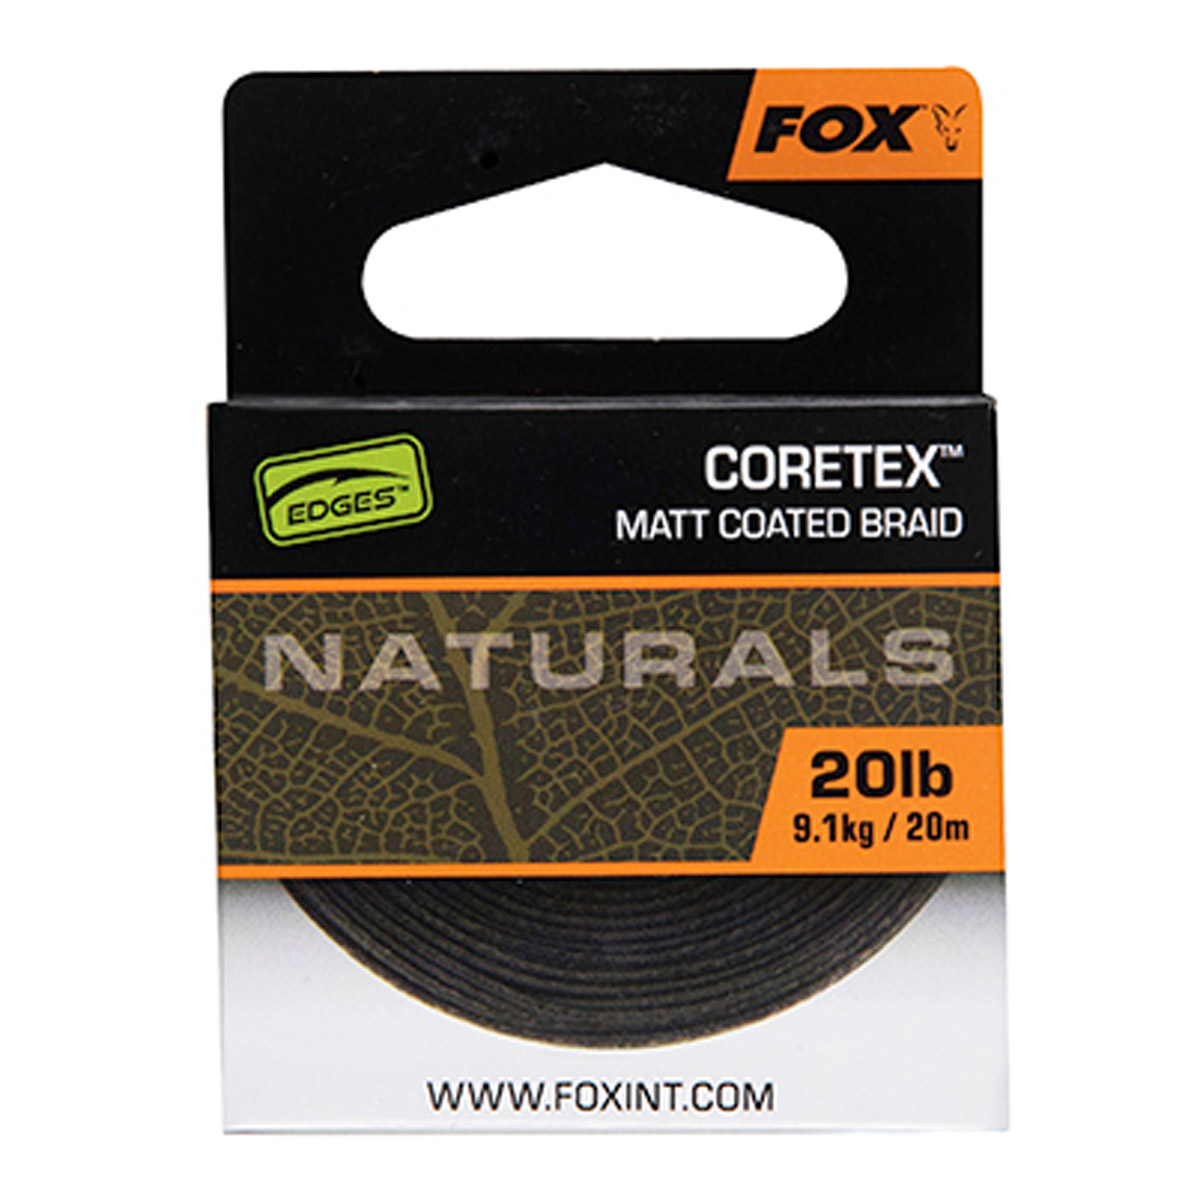 Fox Edges Naturals Coretex 